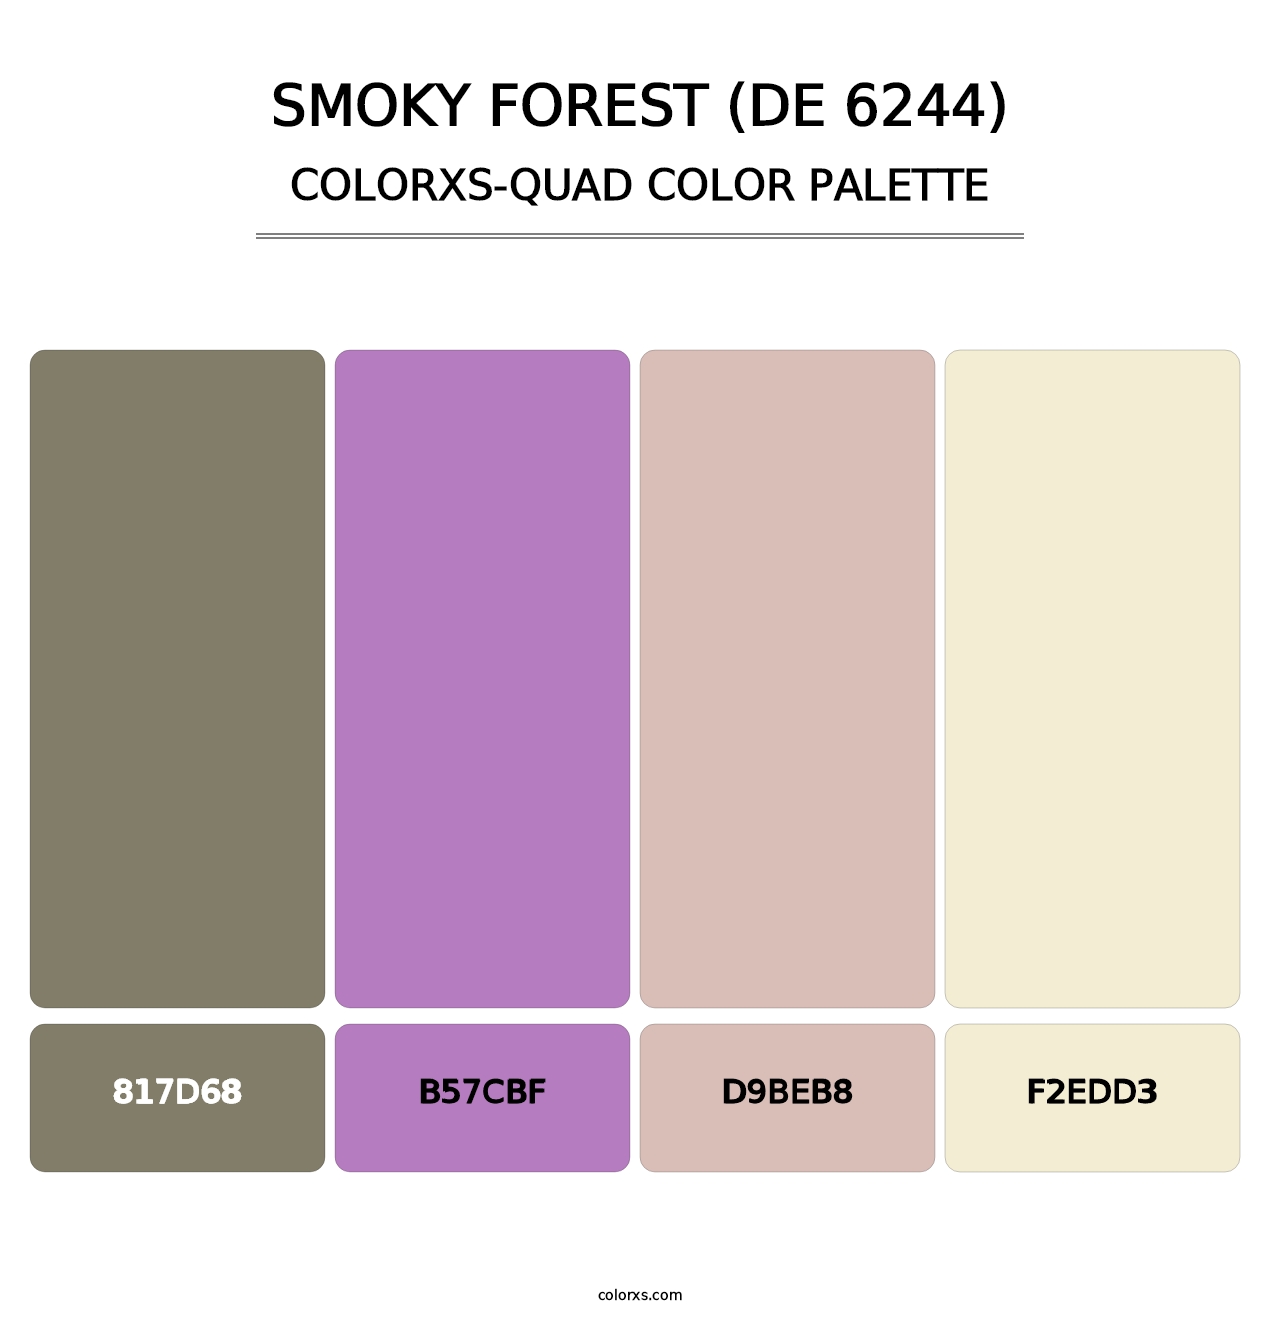 Smoky Forest (DE 6244) - Colorxs Quad Palette